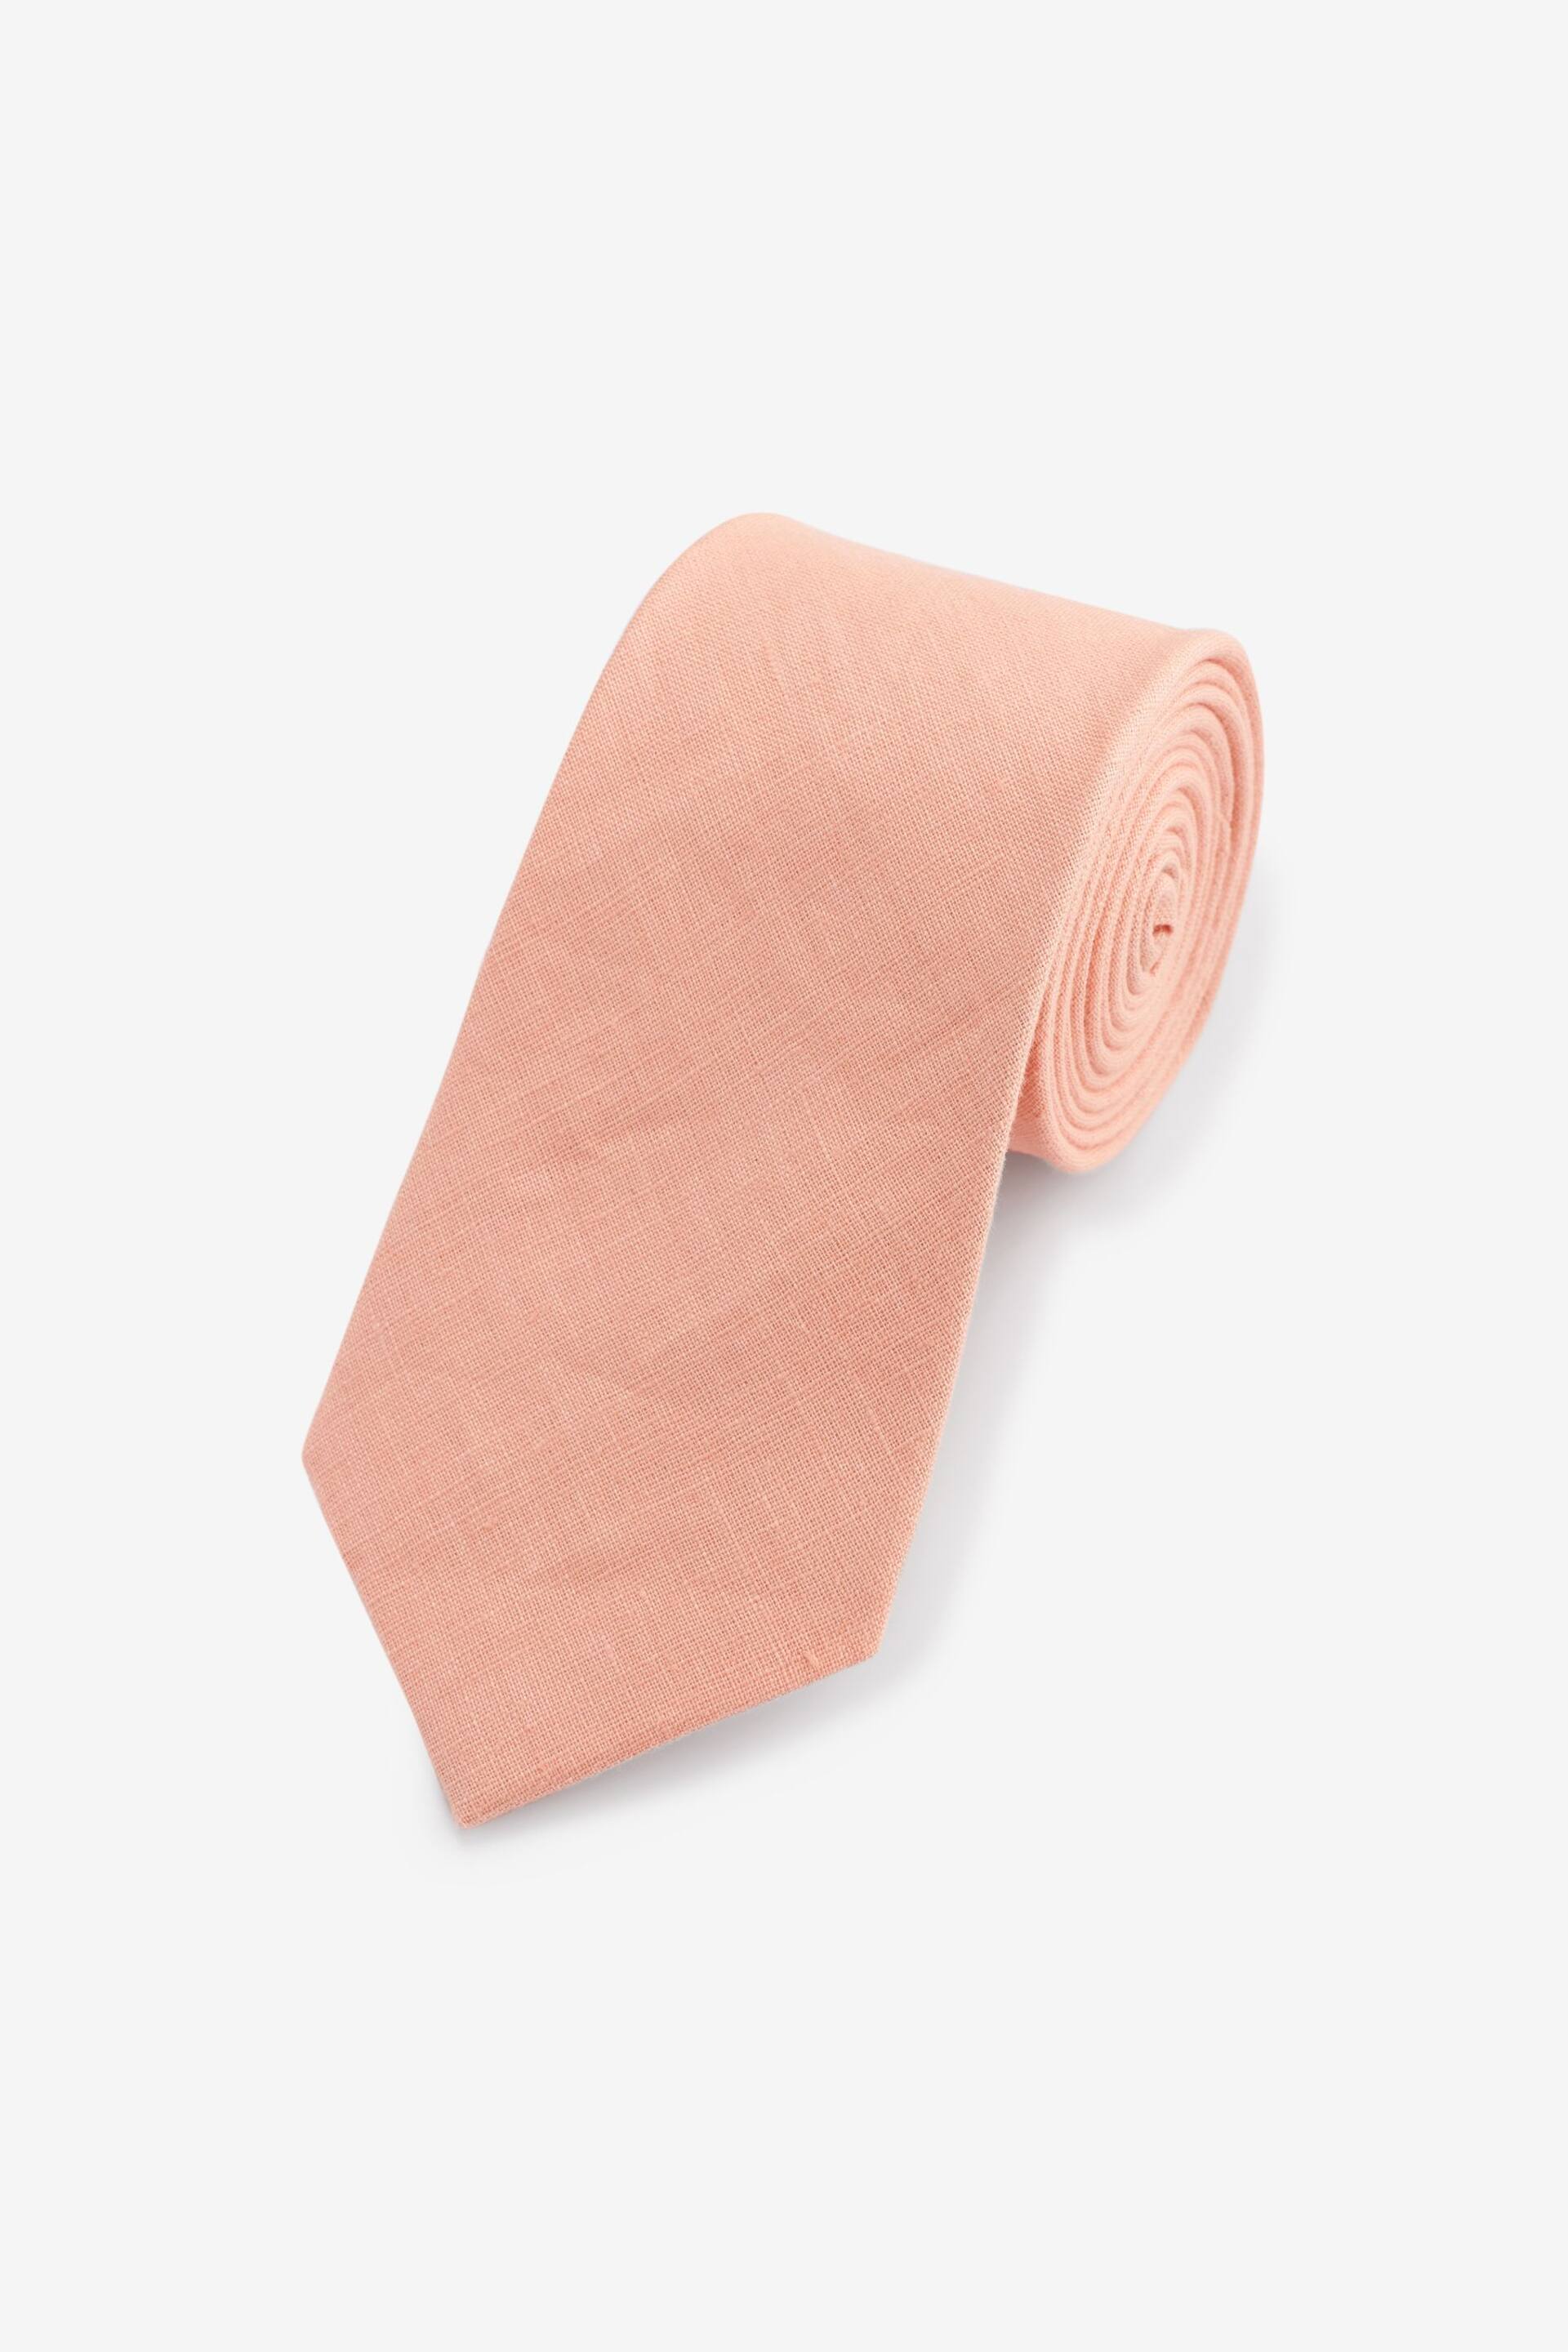 Peach Pink Linen Tie - Image 1 of 3